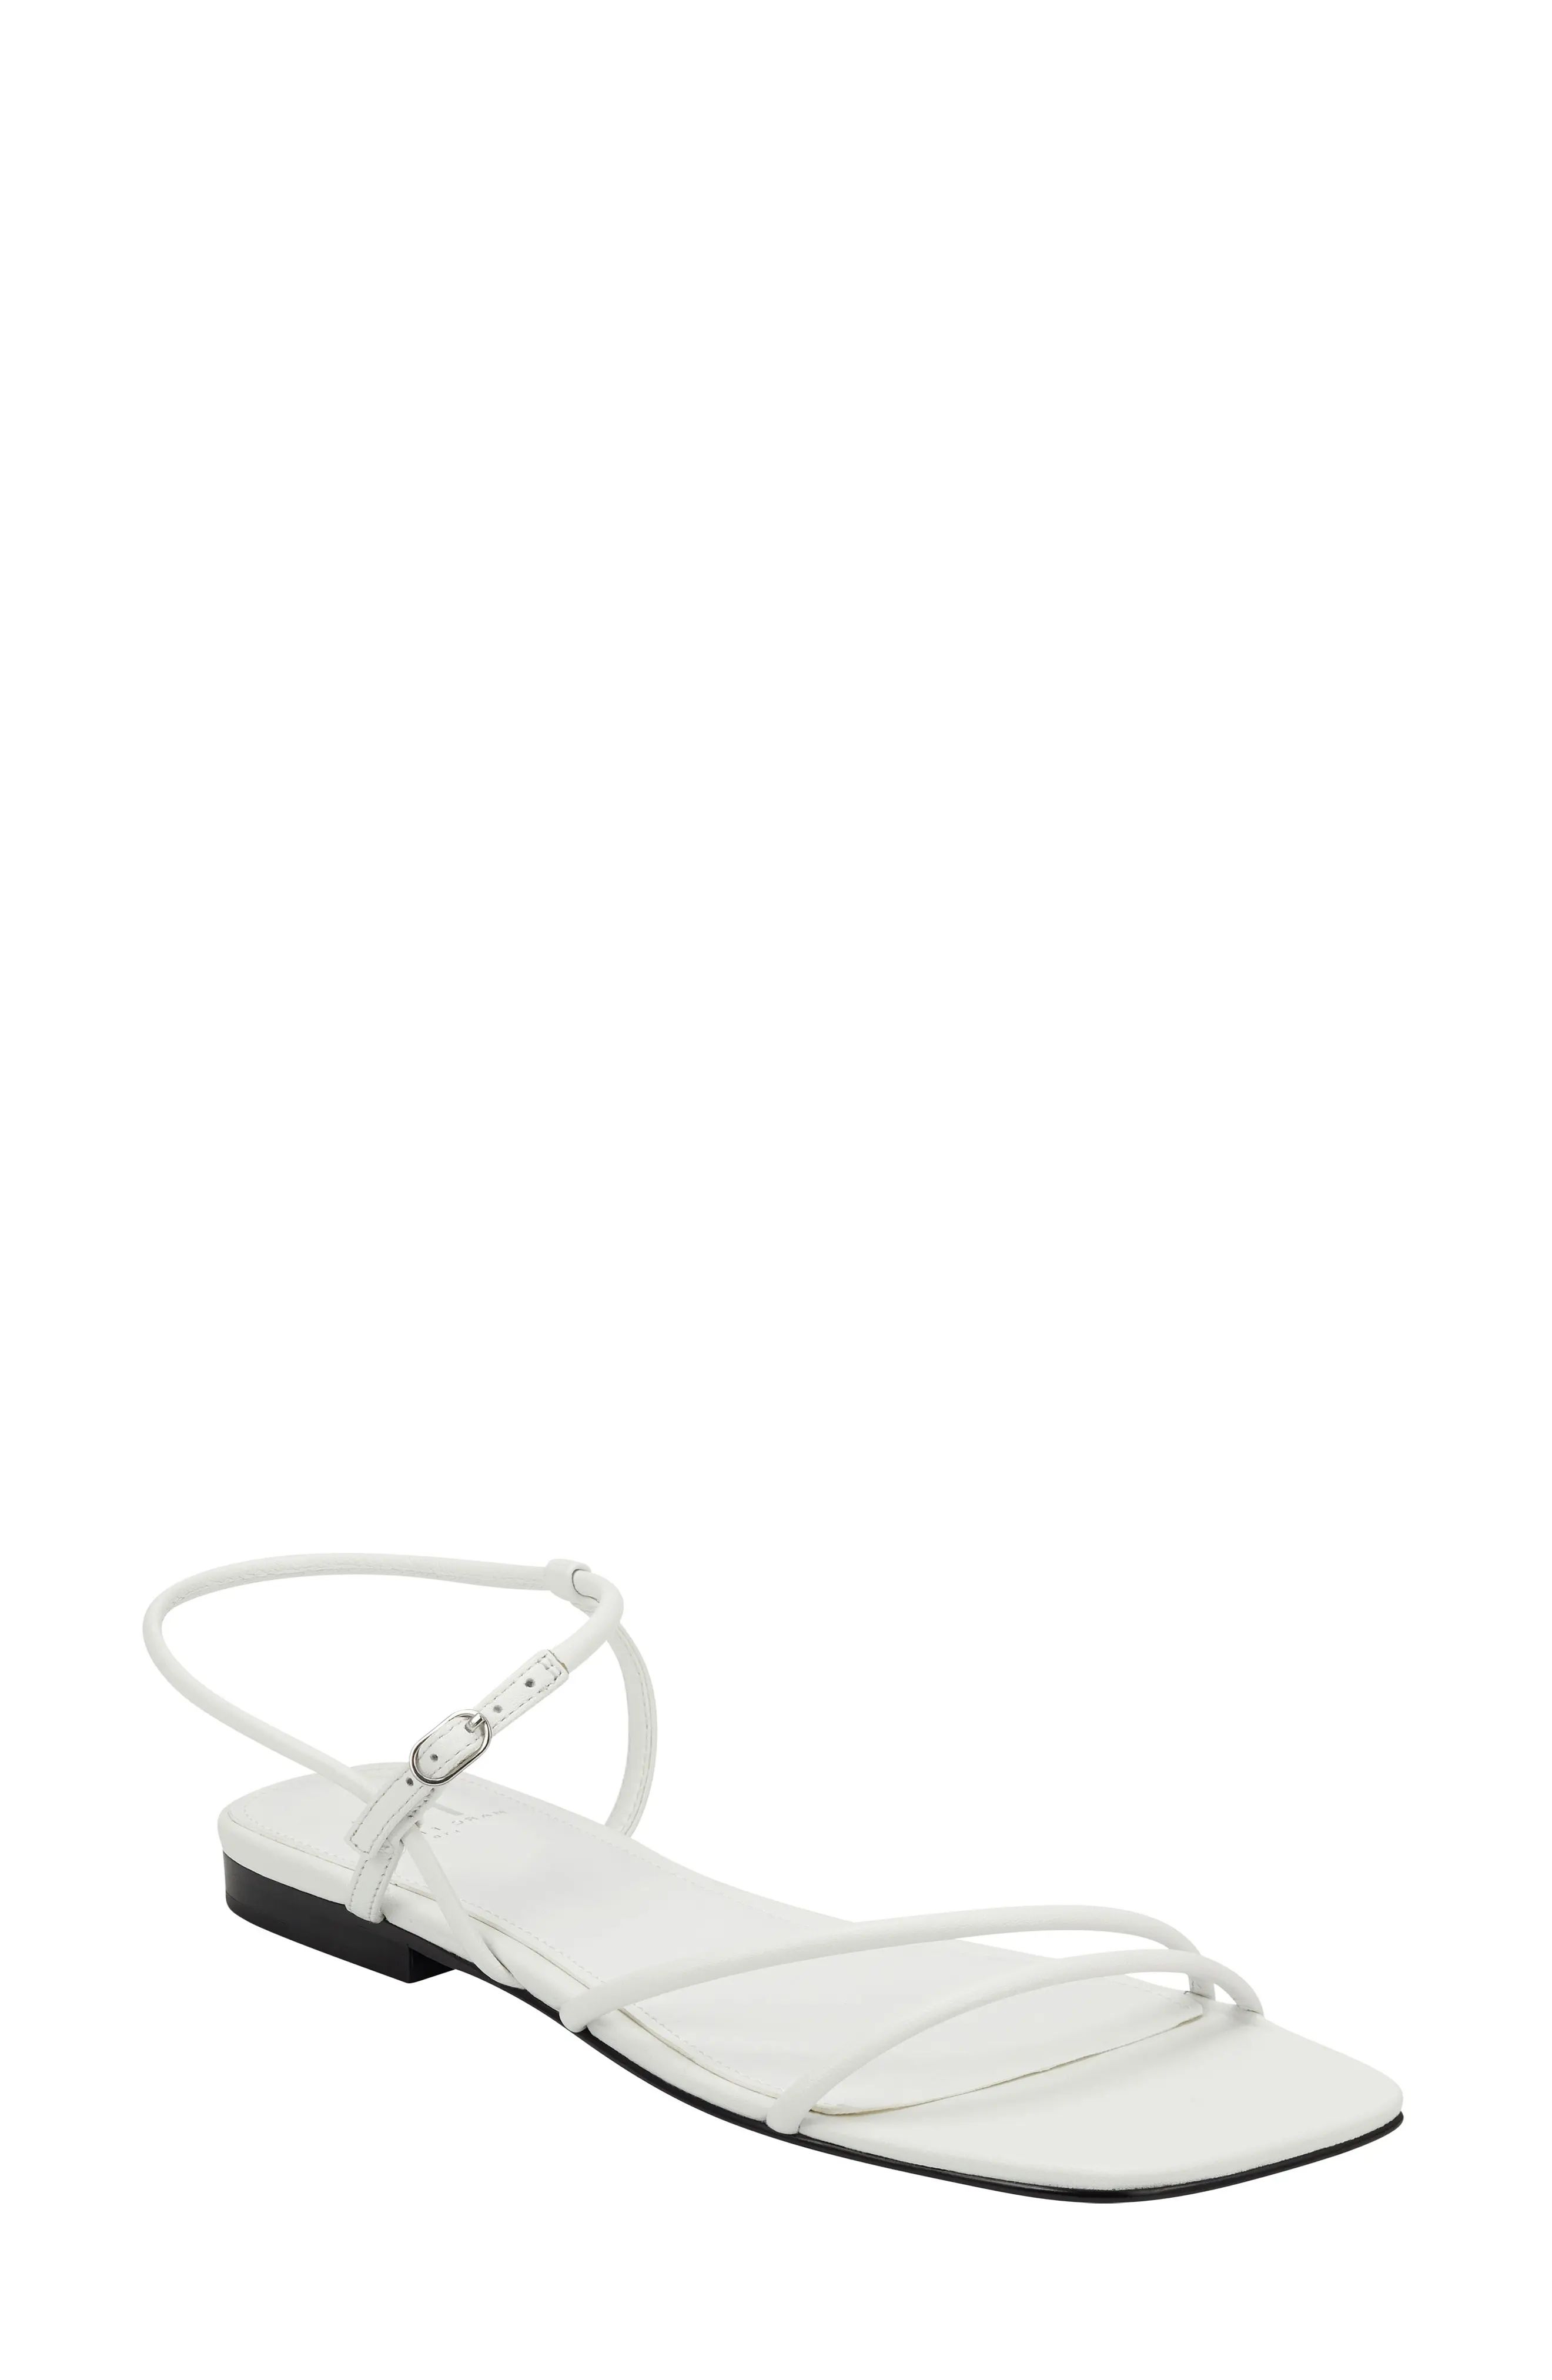 Women's Marc Fisher Ltd Marg Sandal, Size 8.5 M - White | Nordstrom